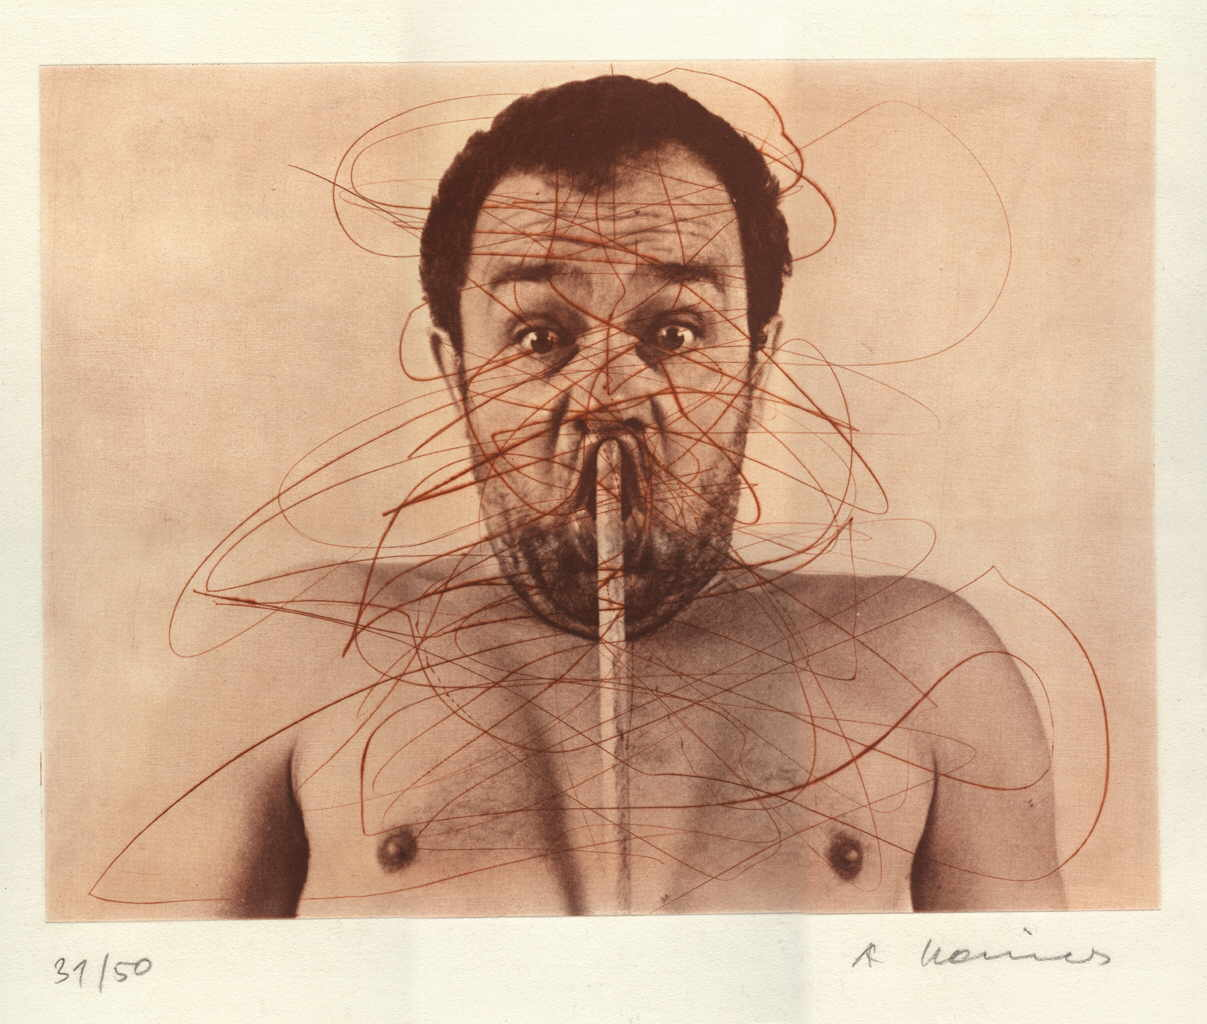 Rainer Arnulf 
untitled, 1971
etching / handmade paper
Plattengröße 30 x 40 cm Papiergröße 50 x 60 cm